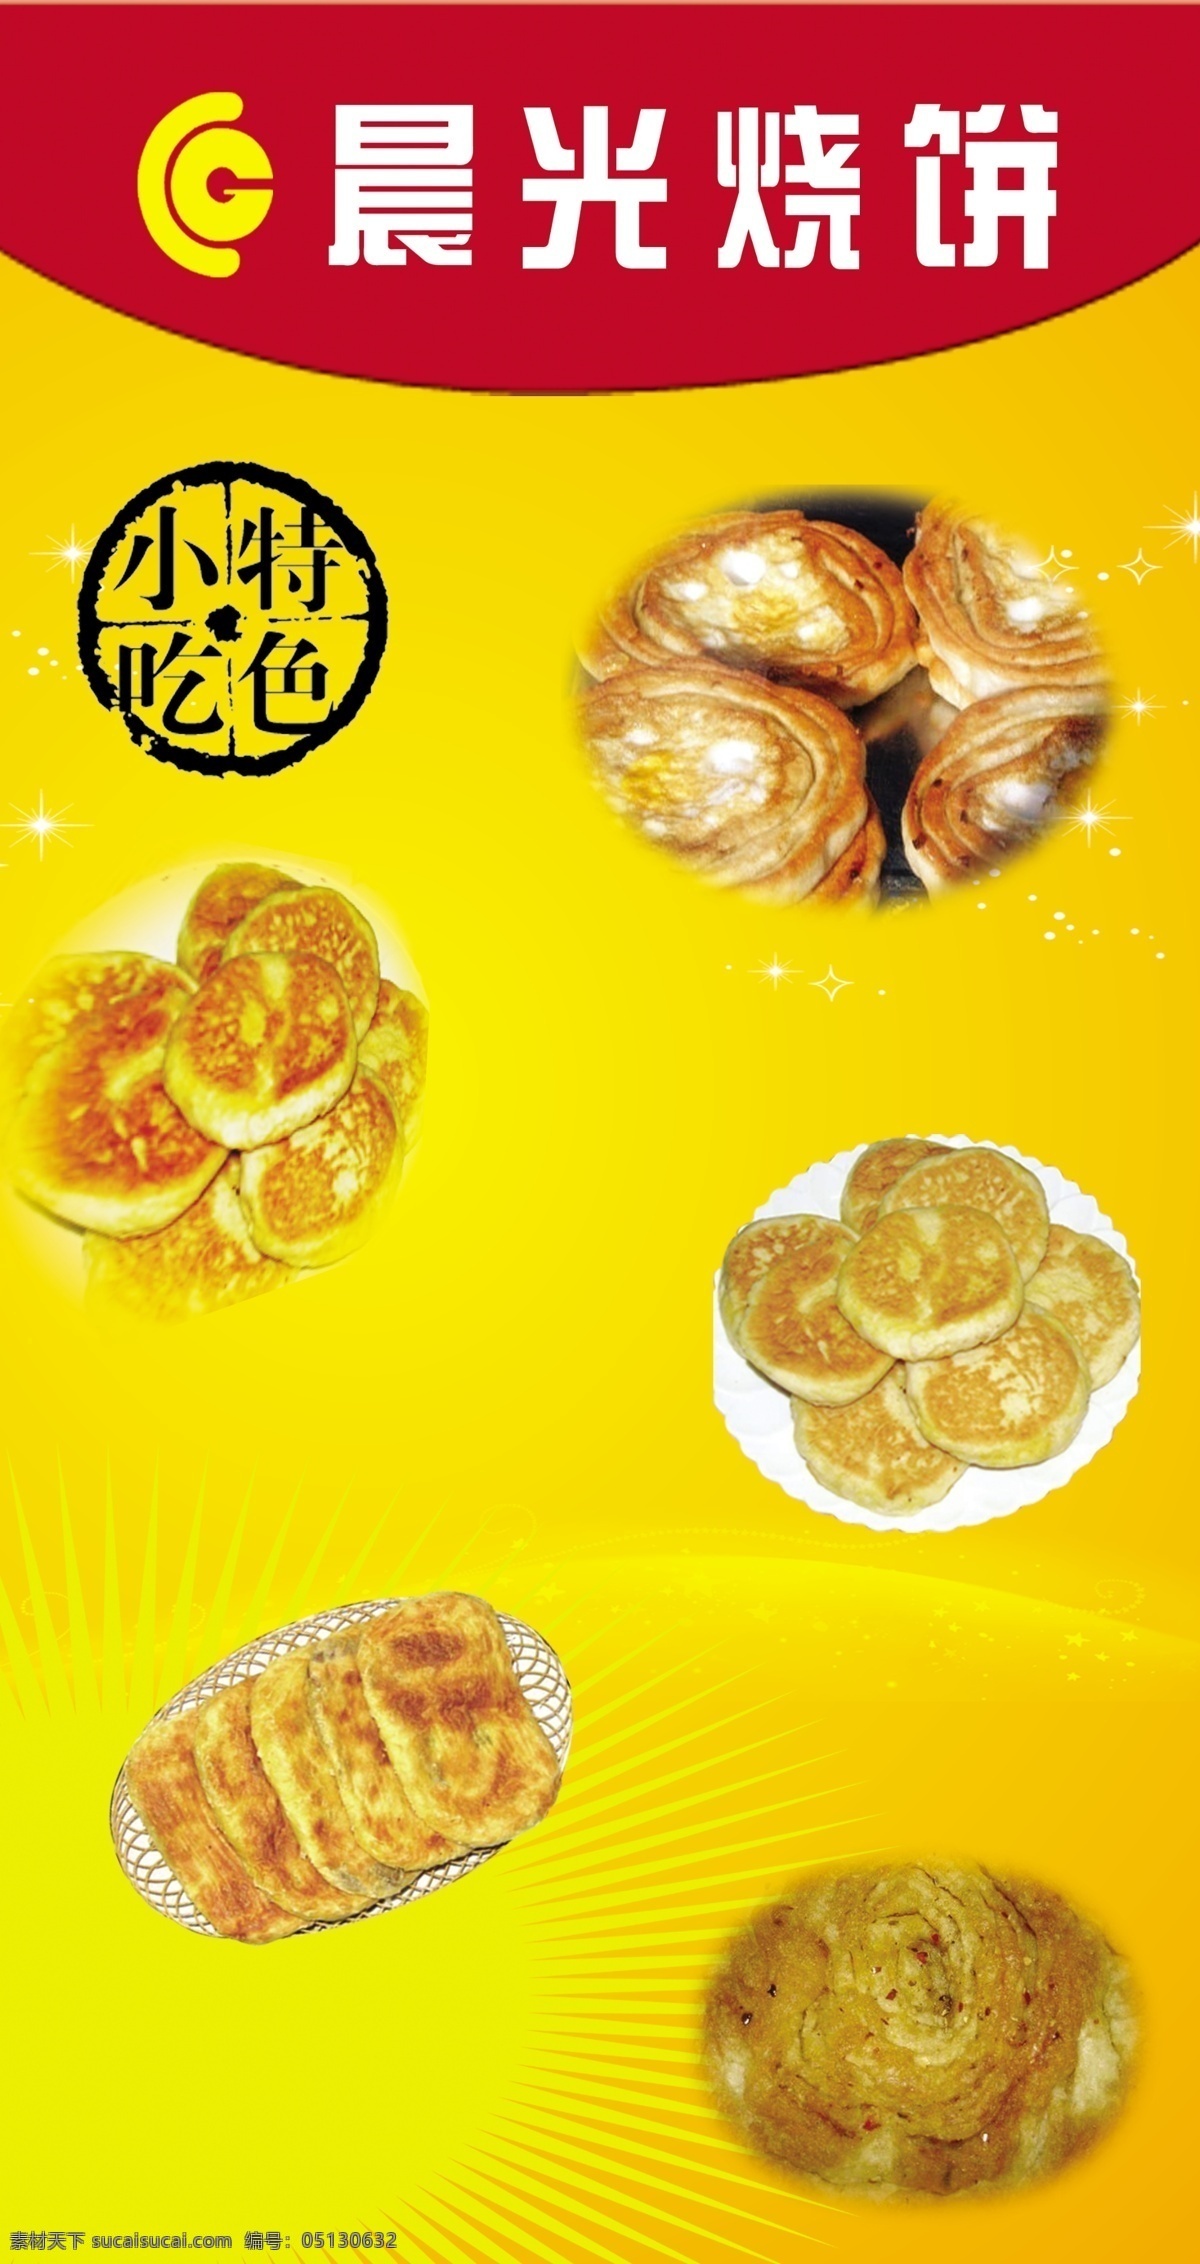 晨光 烧饼 psd格式 光 黄色底图 特色小吃 星光 饼 其它广告设计 psd源文件